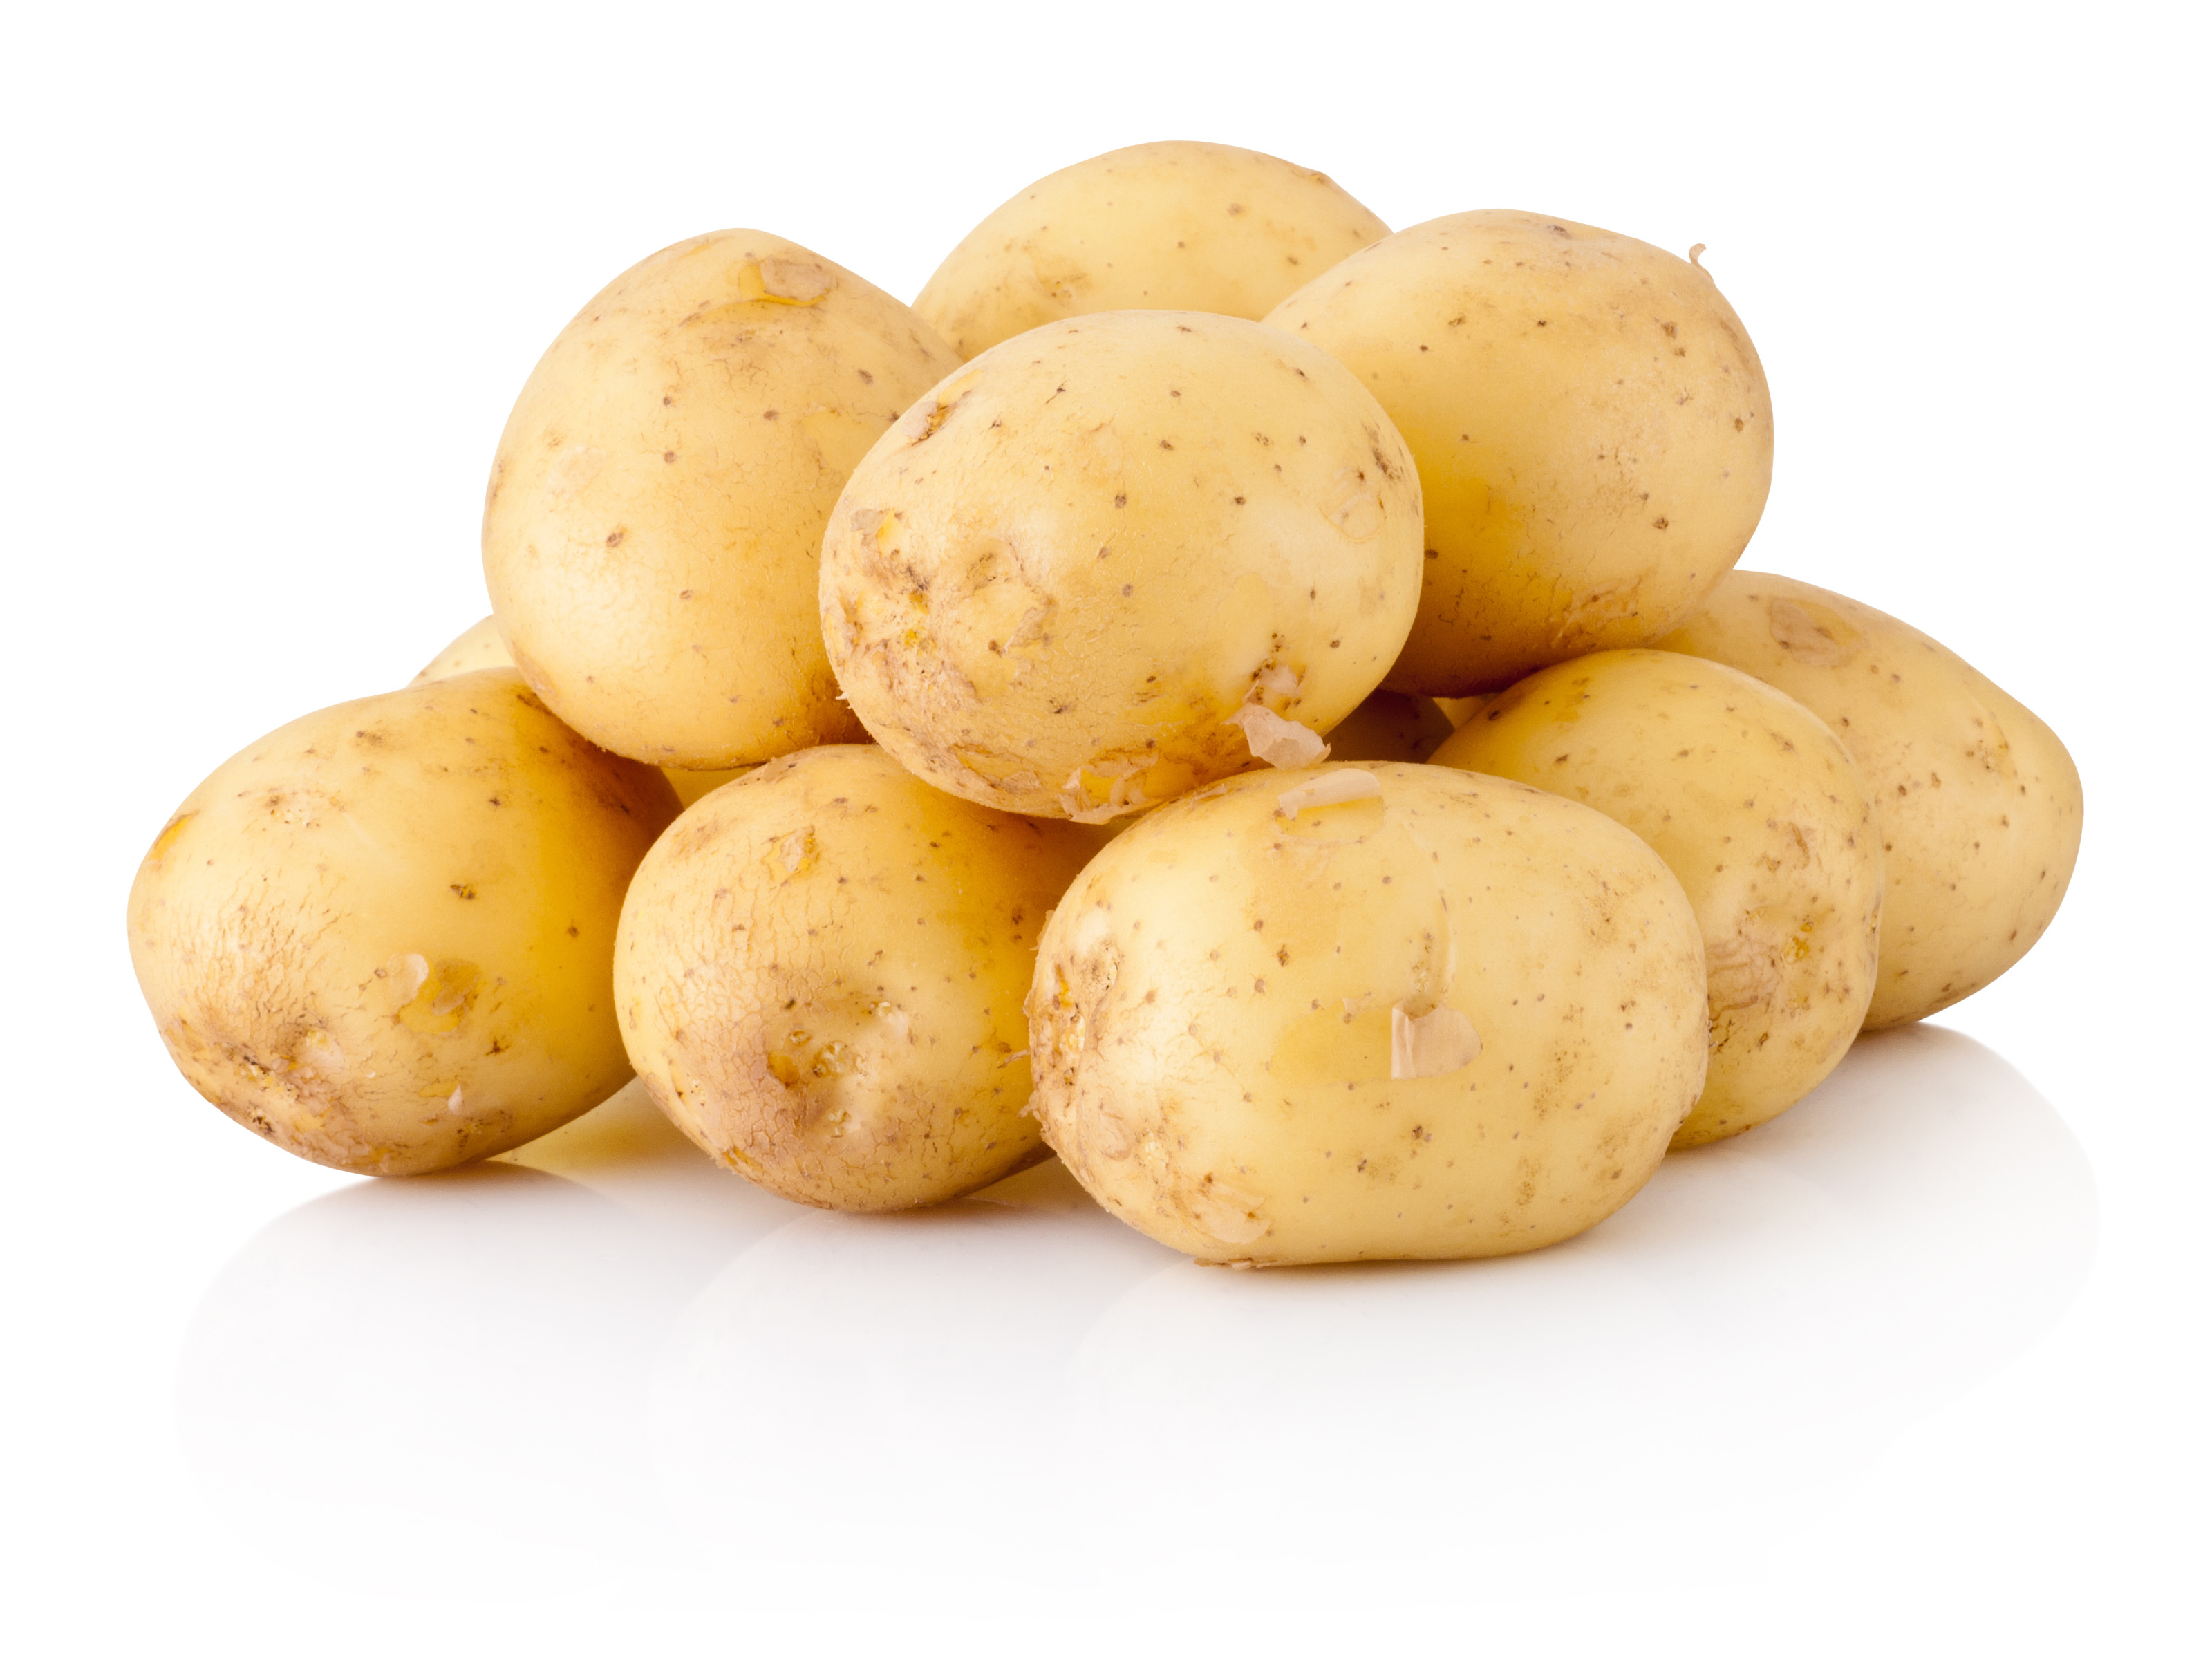 Les pommes de terre, un féculent bon à la santé et pas cher.